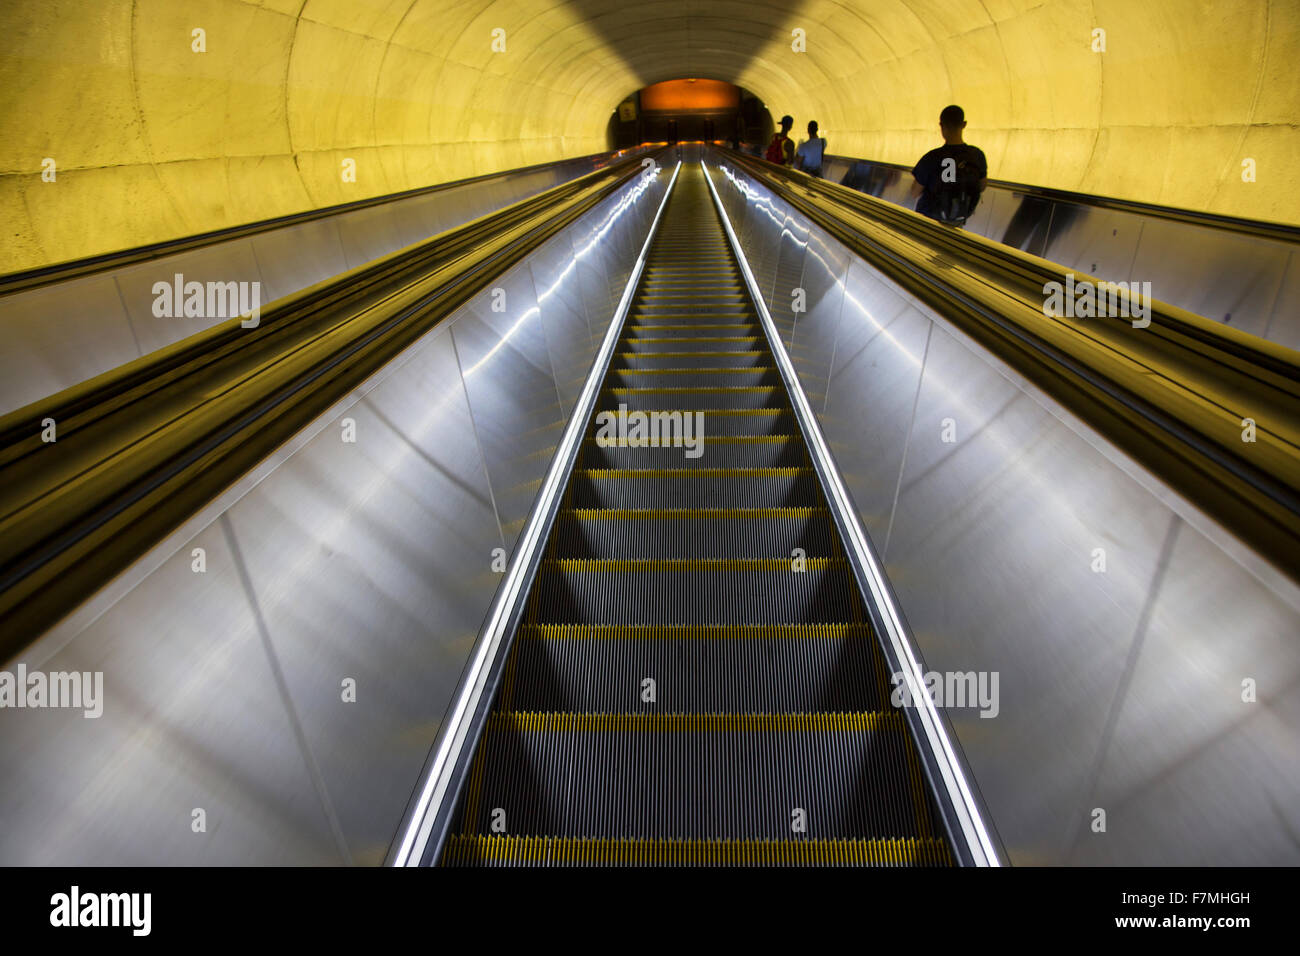 Una scala mobile con i passeggeri si muove attraverso il tubo ovale di luce a Washington D.C. Metrorail treni pendolari Foto Stock